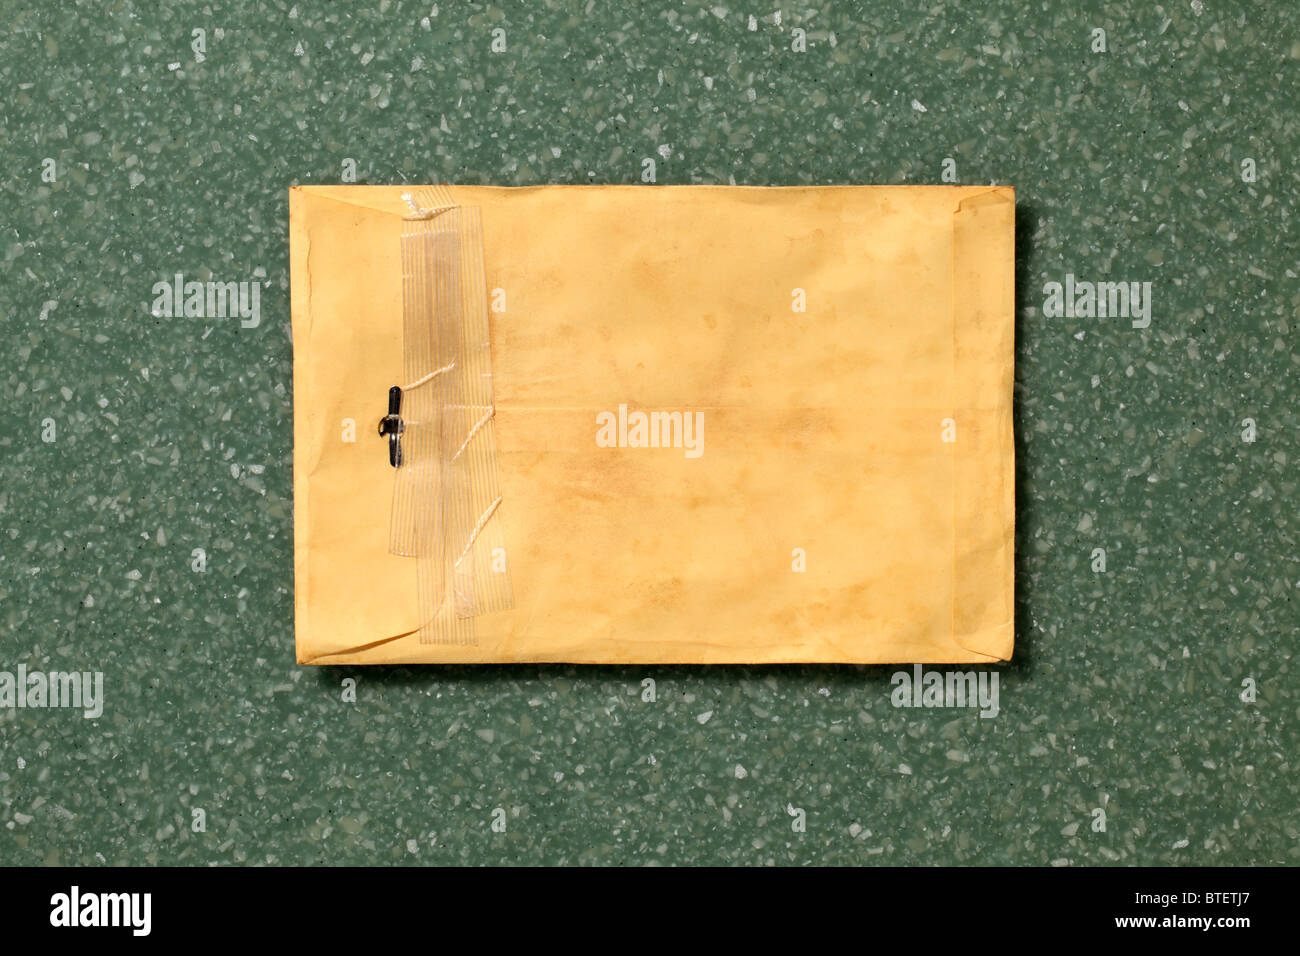 Eine gebrauchte mailing Postumschlag aufgerissen. Grün gesprenkelt Counter Top Hintergrund Stockfoto